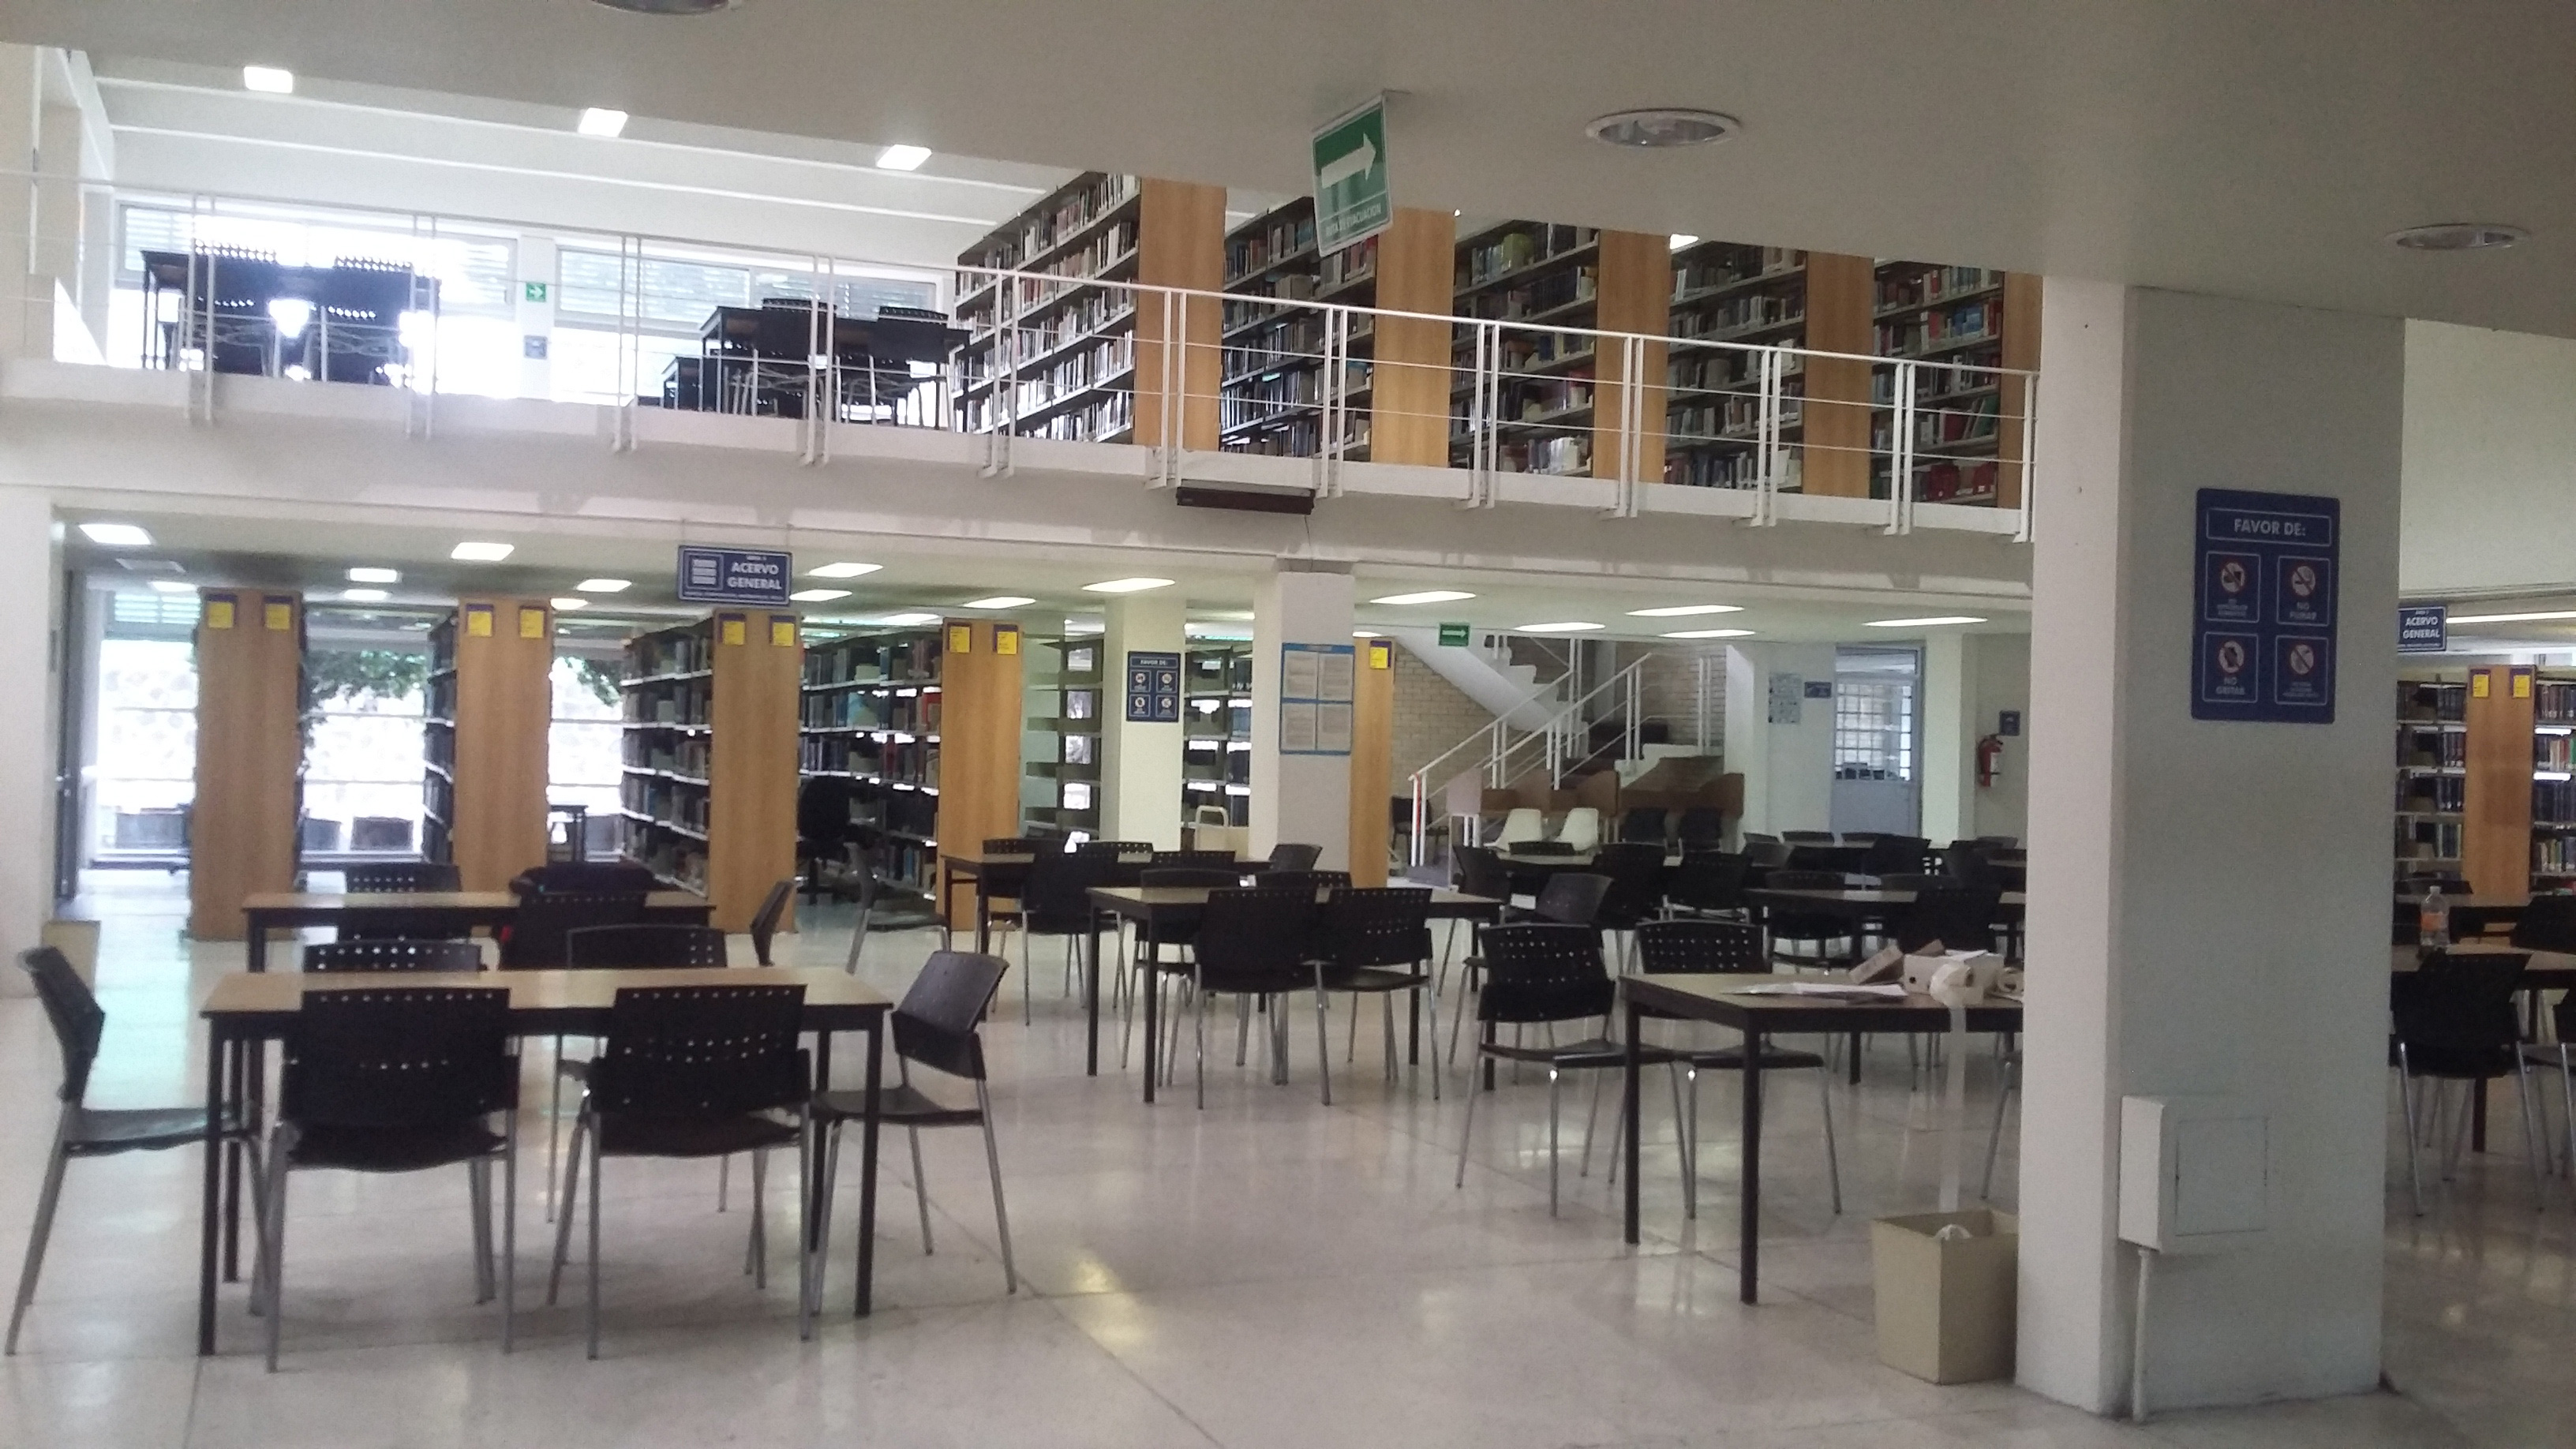 Biblioteca "Prof. Raúl Martínez y Rosas"